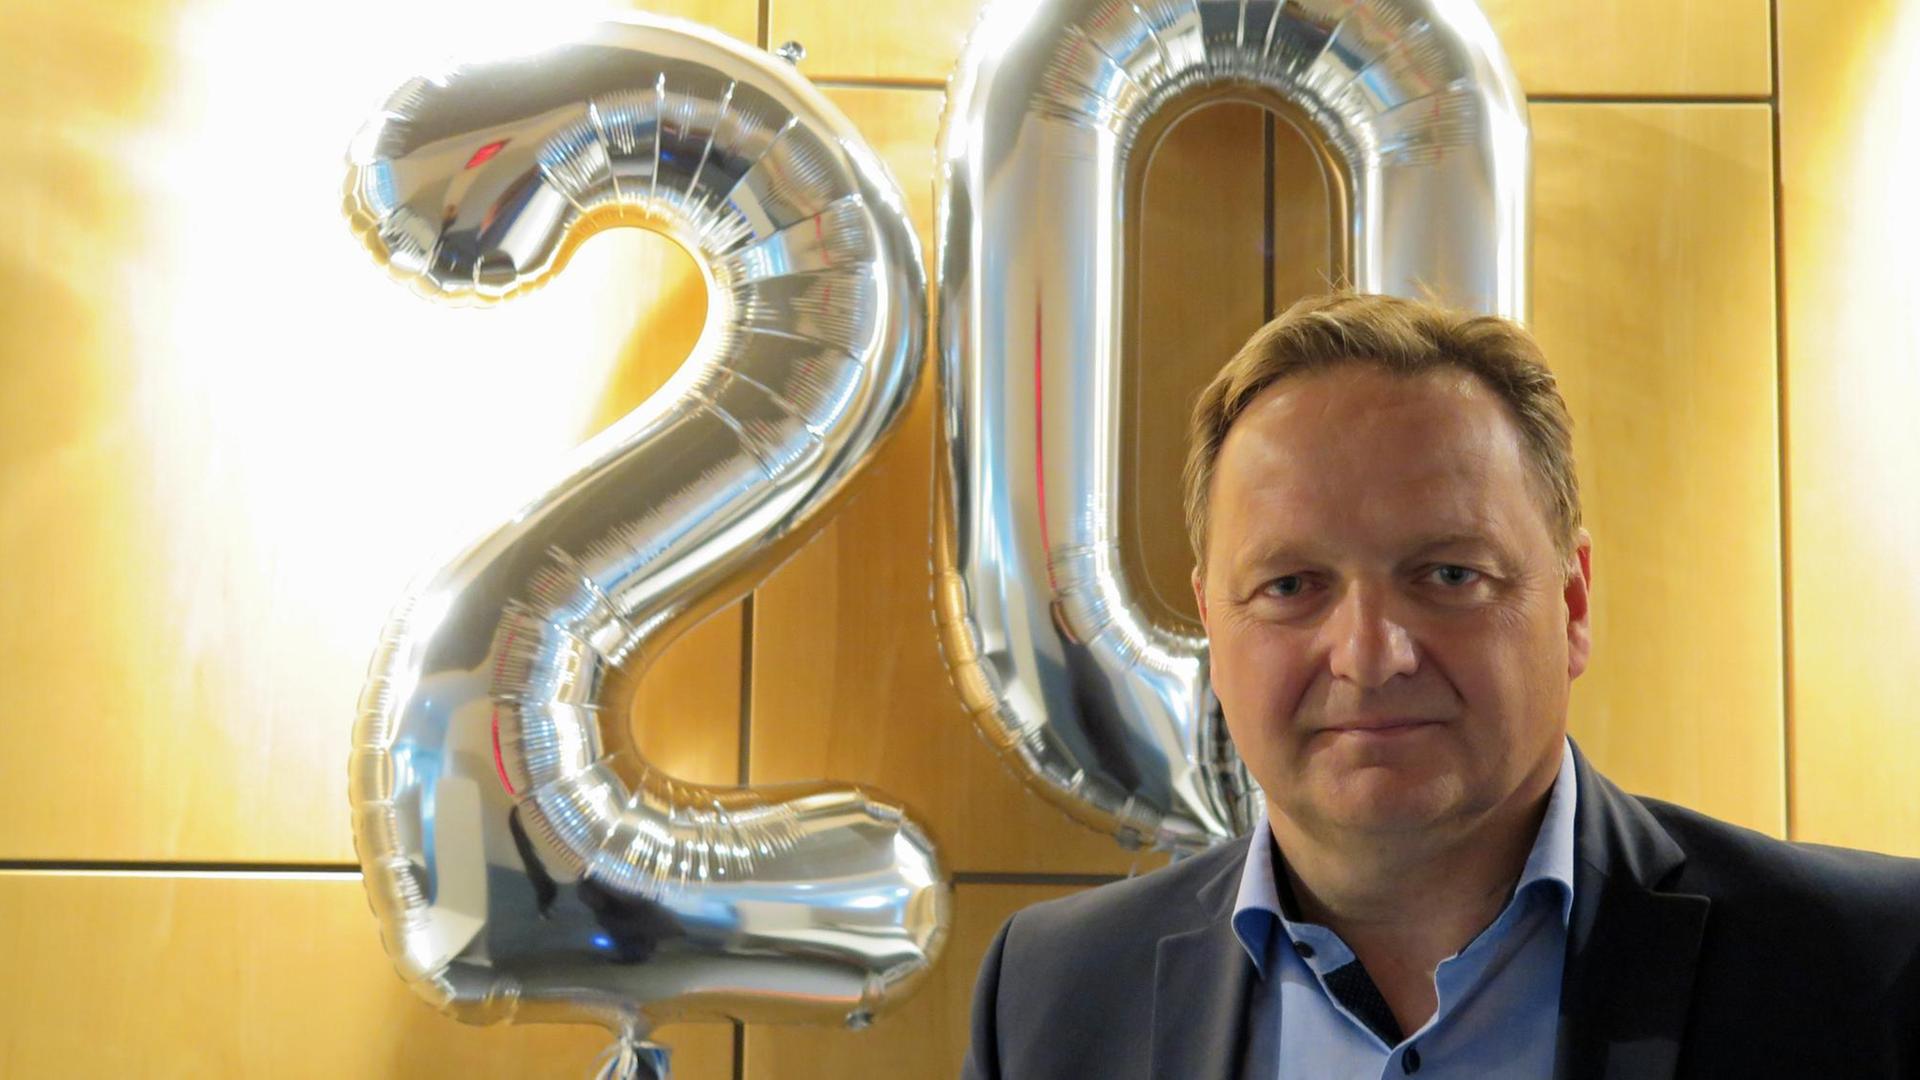 Jürgen Böhm, Vorsitzender Verband Deutscher Realschullehrer steht vor einer Holzwand. Im Hintergrund sind zwei silberne Luftballons zu sehen, welche die Zahl 20 bilden.